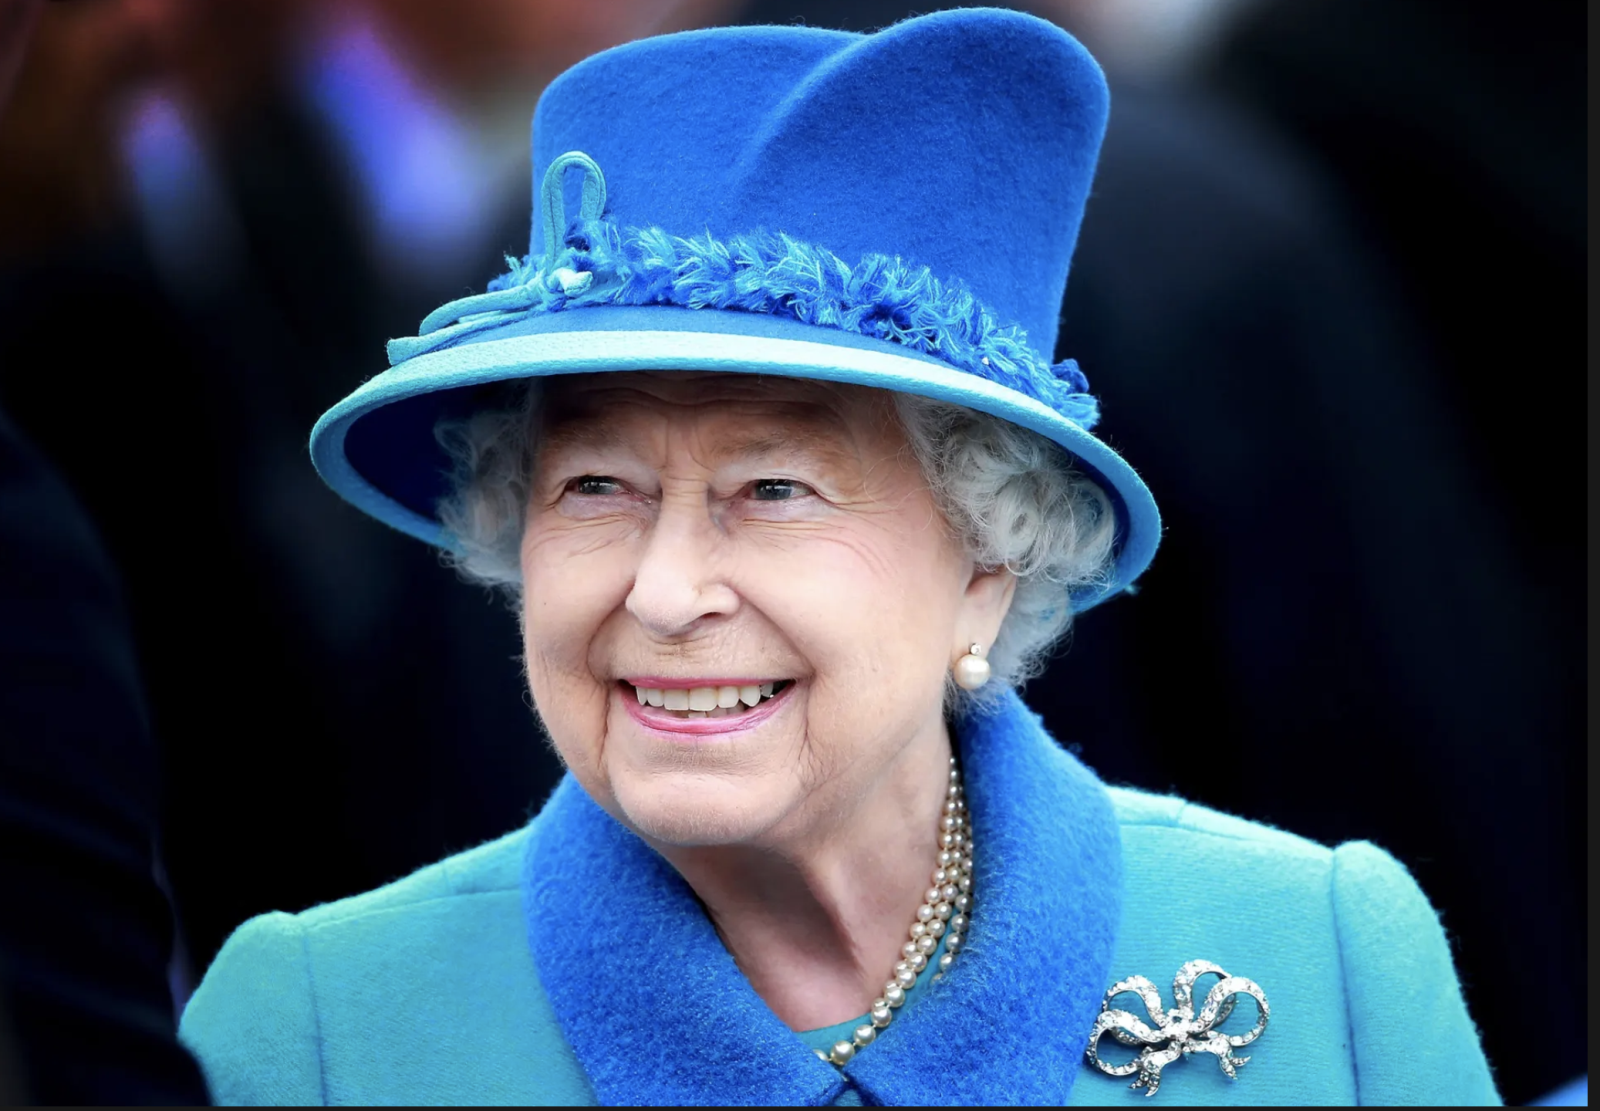 Nữ hoàng Elizabeth II - Vị nữ hoàng trẻ tuổi nhất trong lịch sử Vương quốc Anh. Từ các nghi thức Đại hội hoàng gia đến các dự án từ thiện, vị vua nữ này đã có nhiều đóng góp to lớn cho đất nước Anh. Hãy thưởng thức hình ảnh đặc biệt về nữ hoàng Elizabeth II.